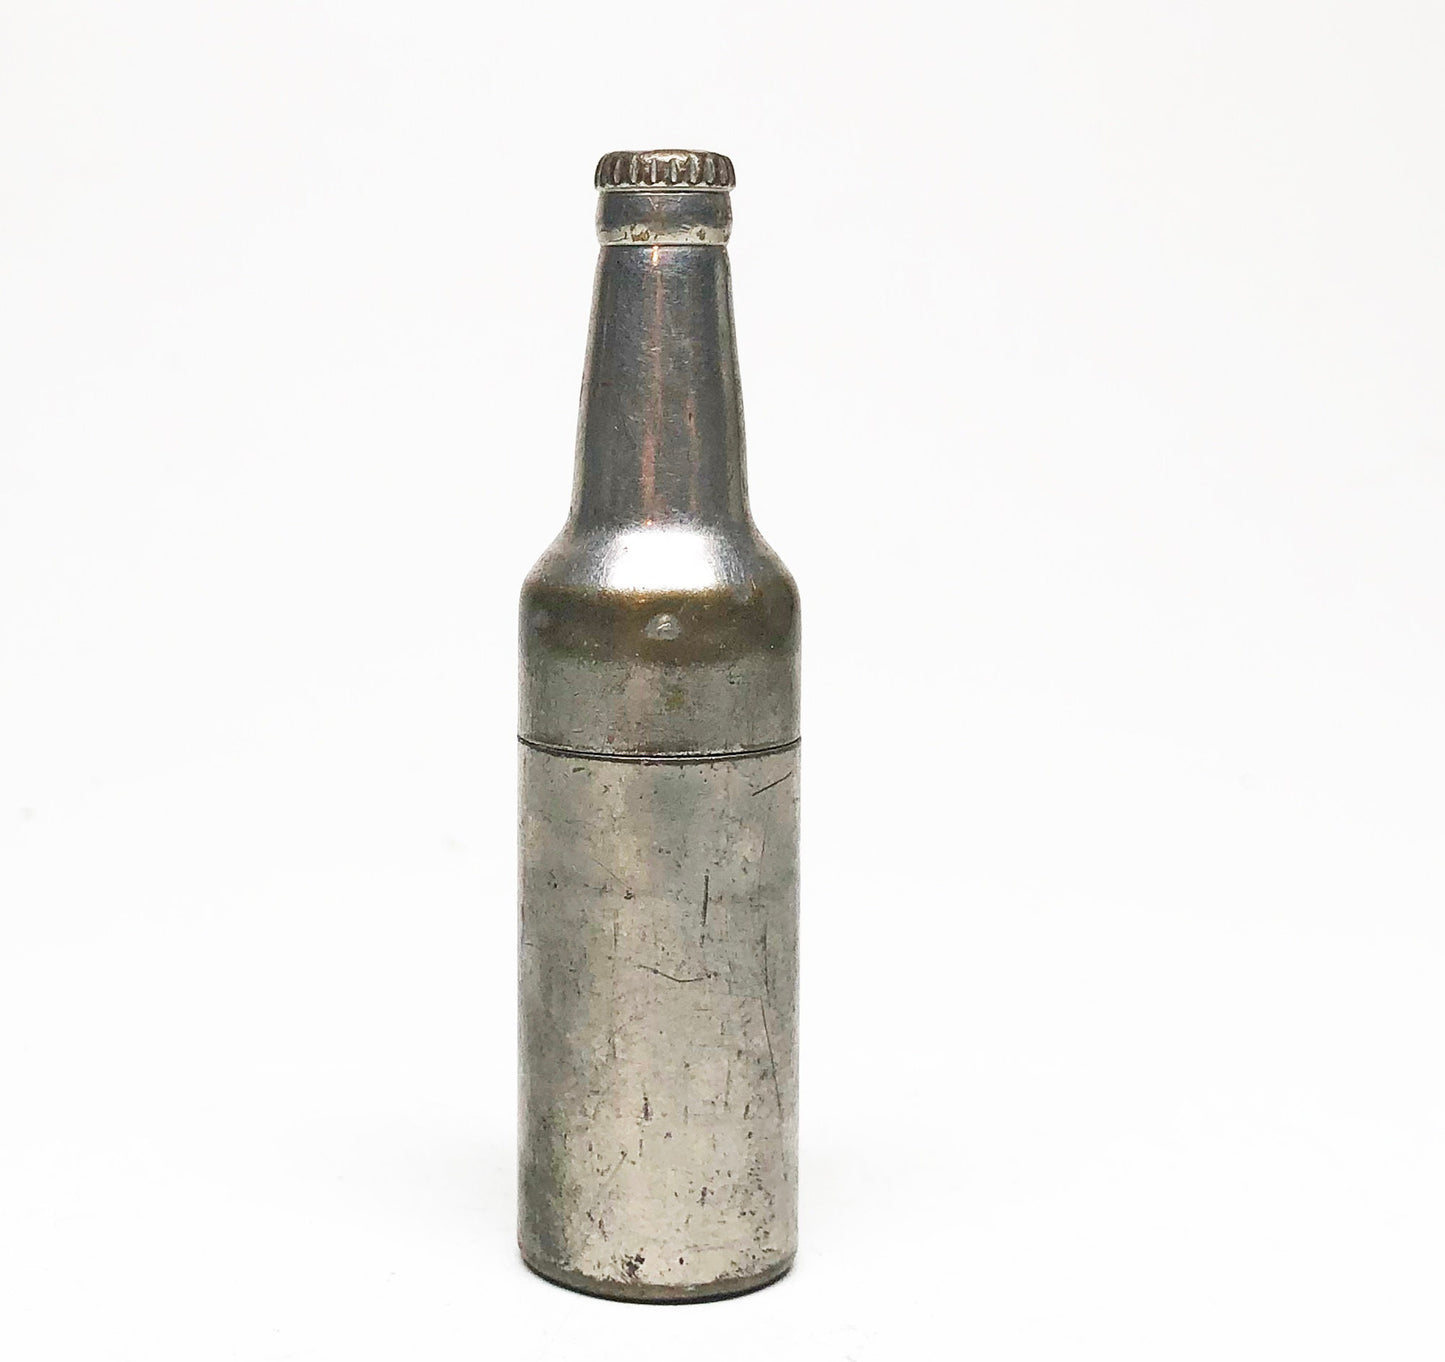 Vintage Bottle Lighter - Vintage Kem Inc. 1940s Beer Figural Lighter made in USA